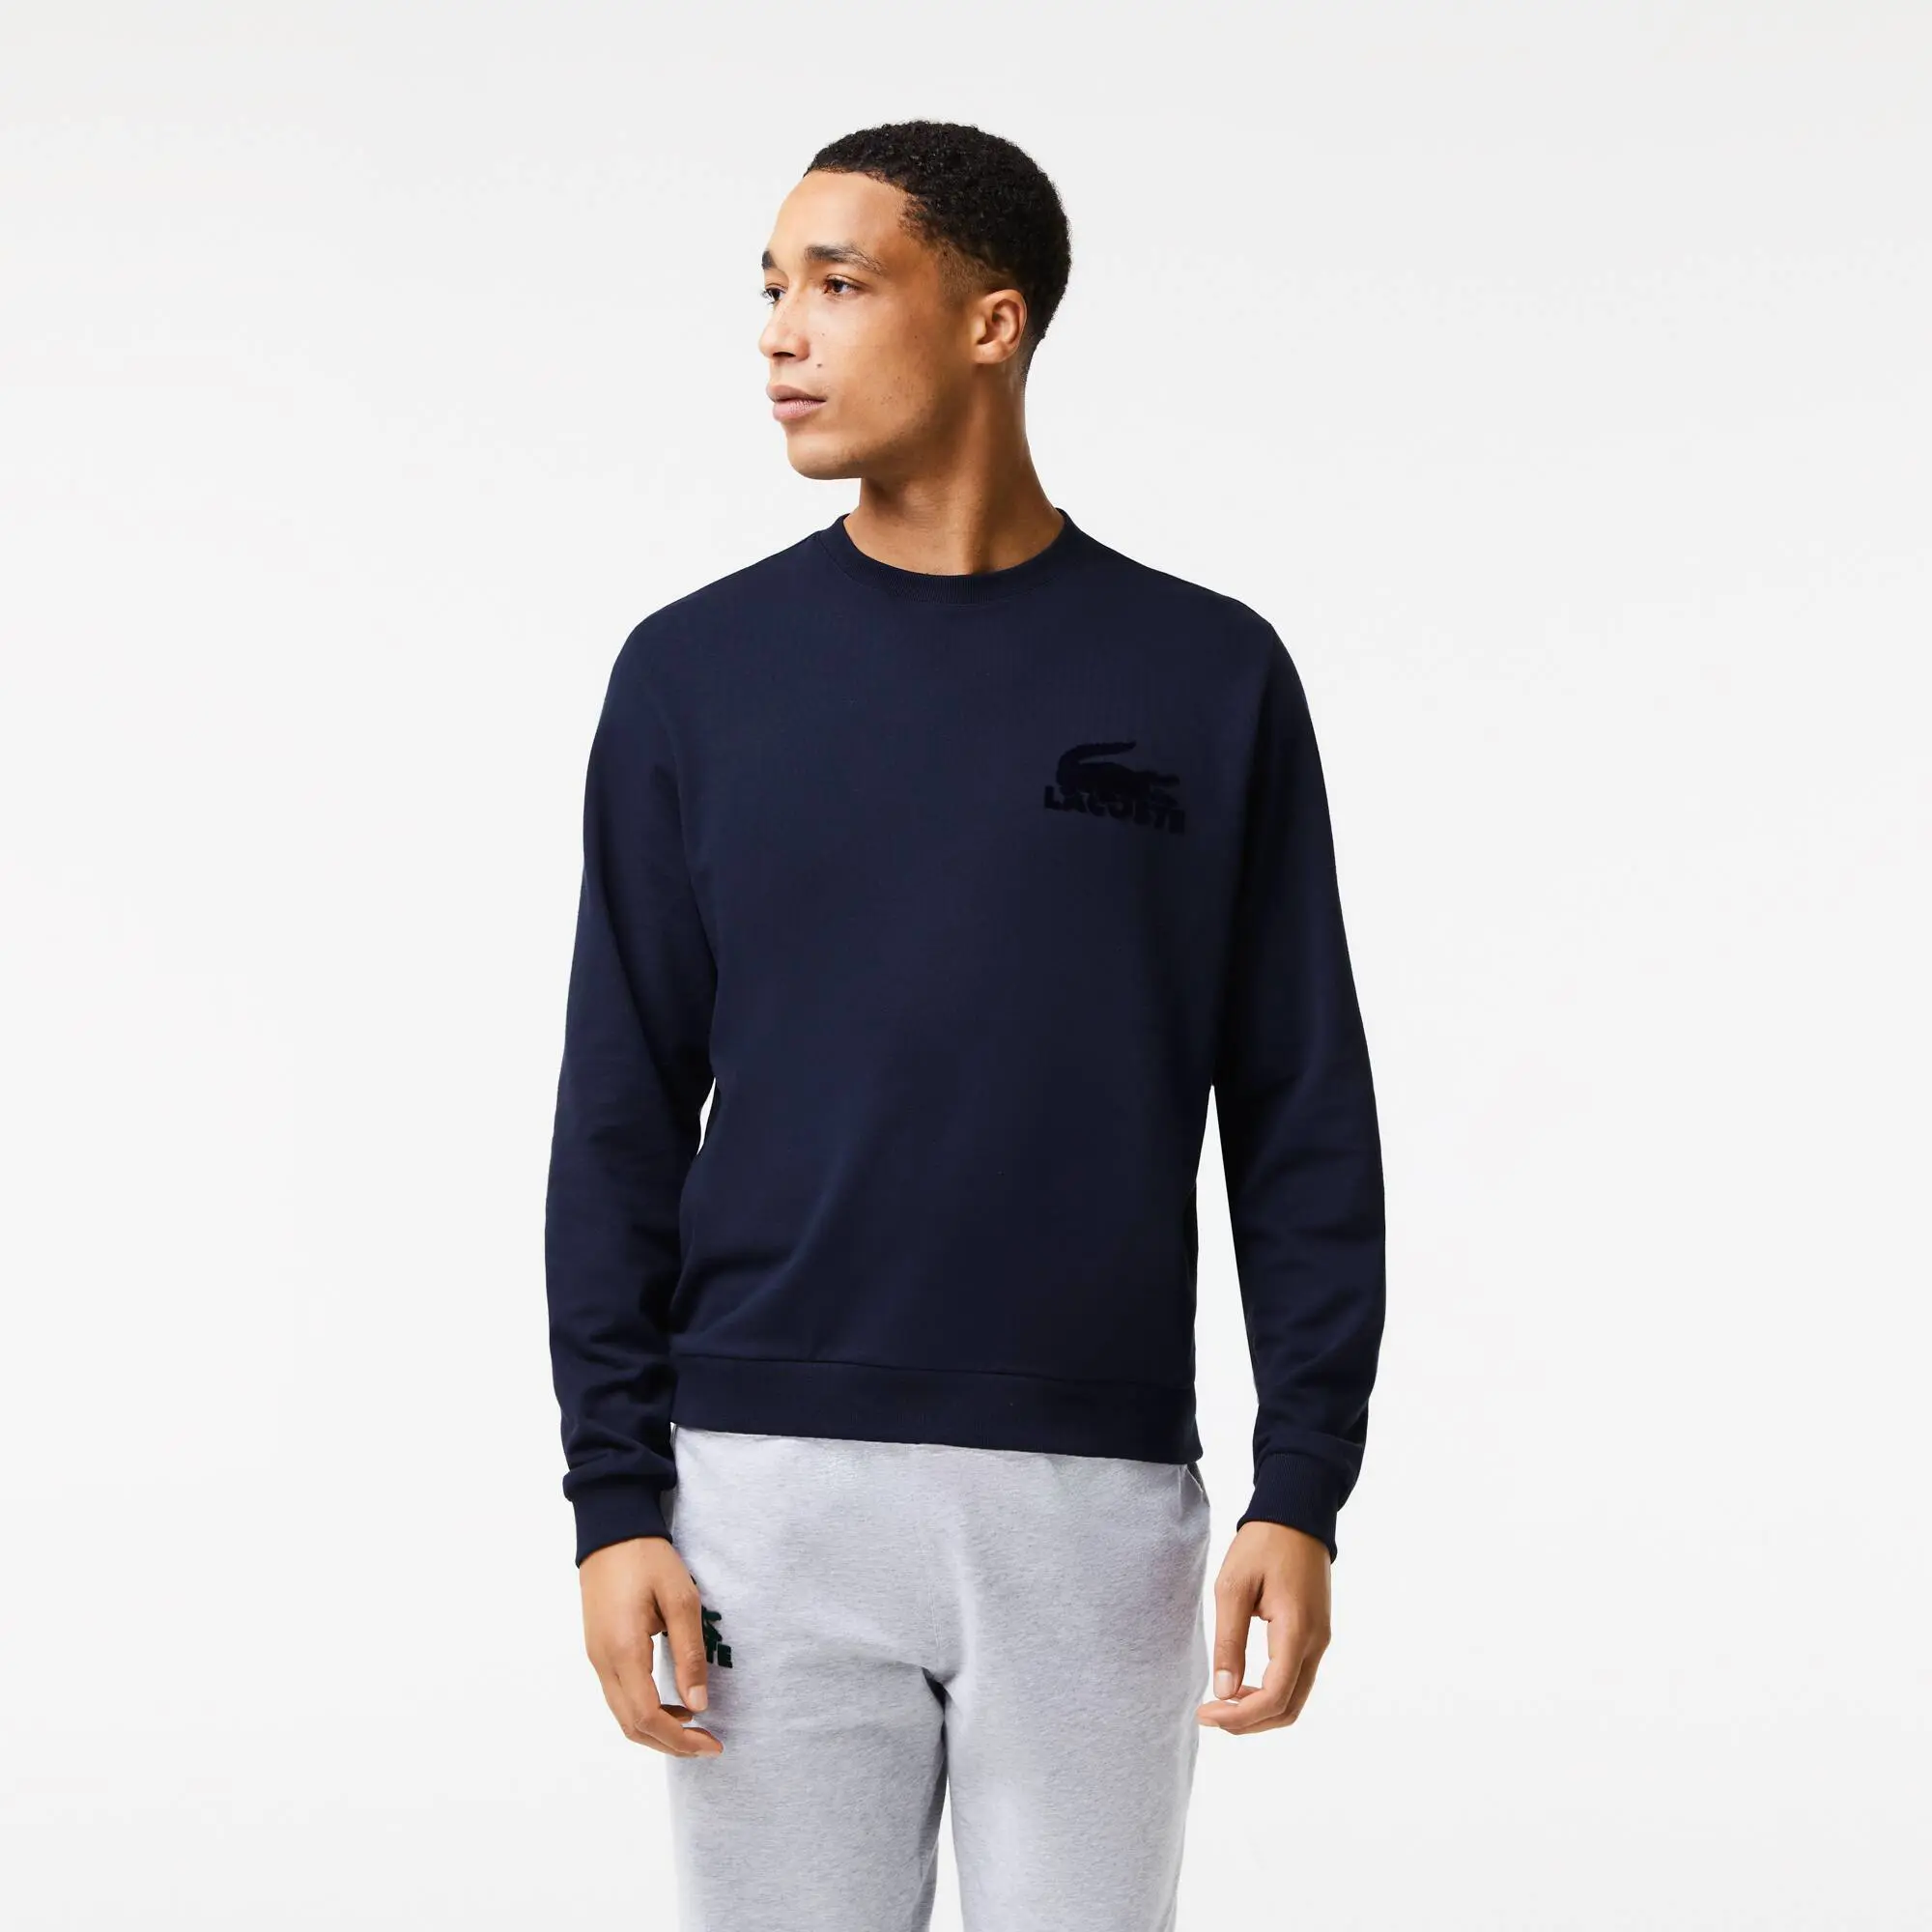 Lacoste Men's Cotton Fleece Indoor Sweatshirt. 1